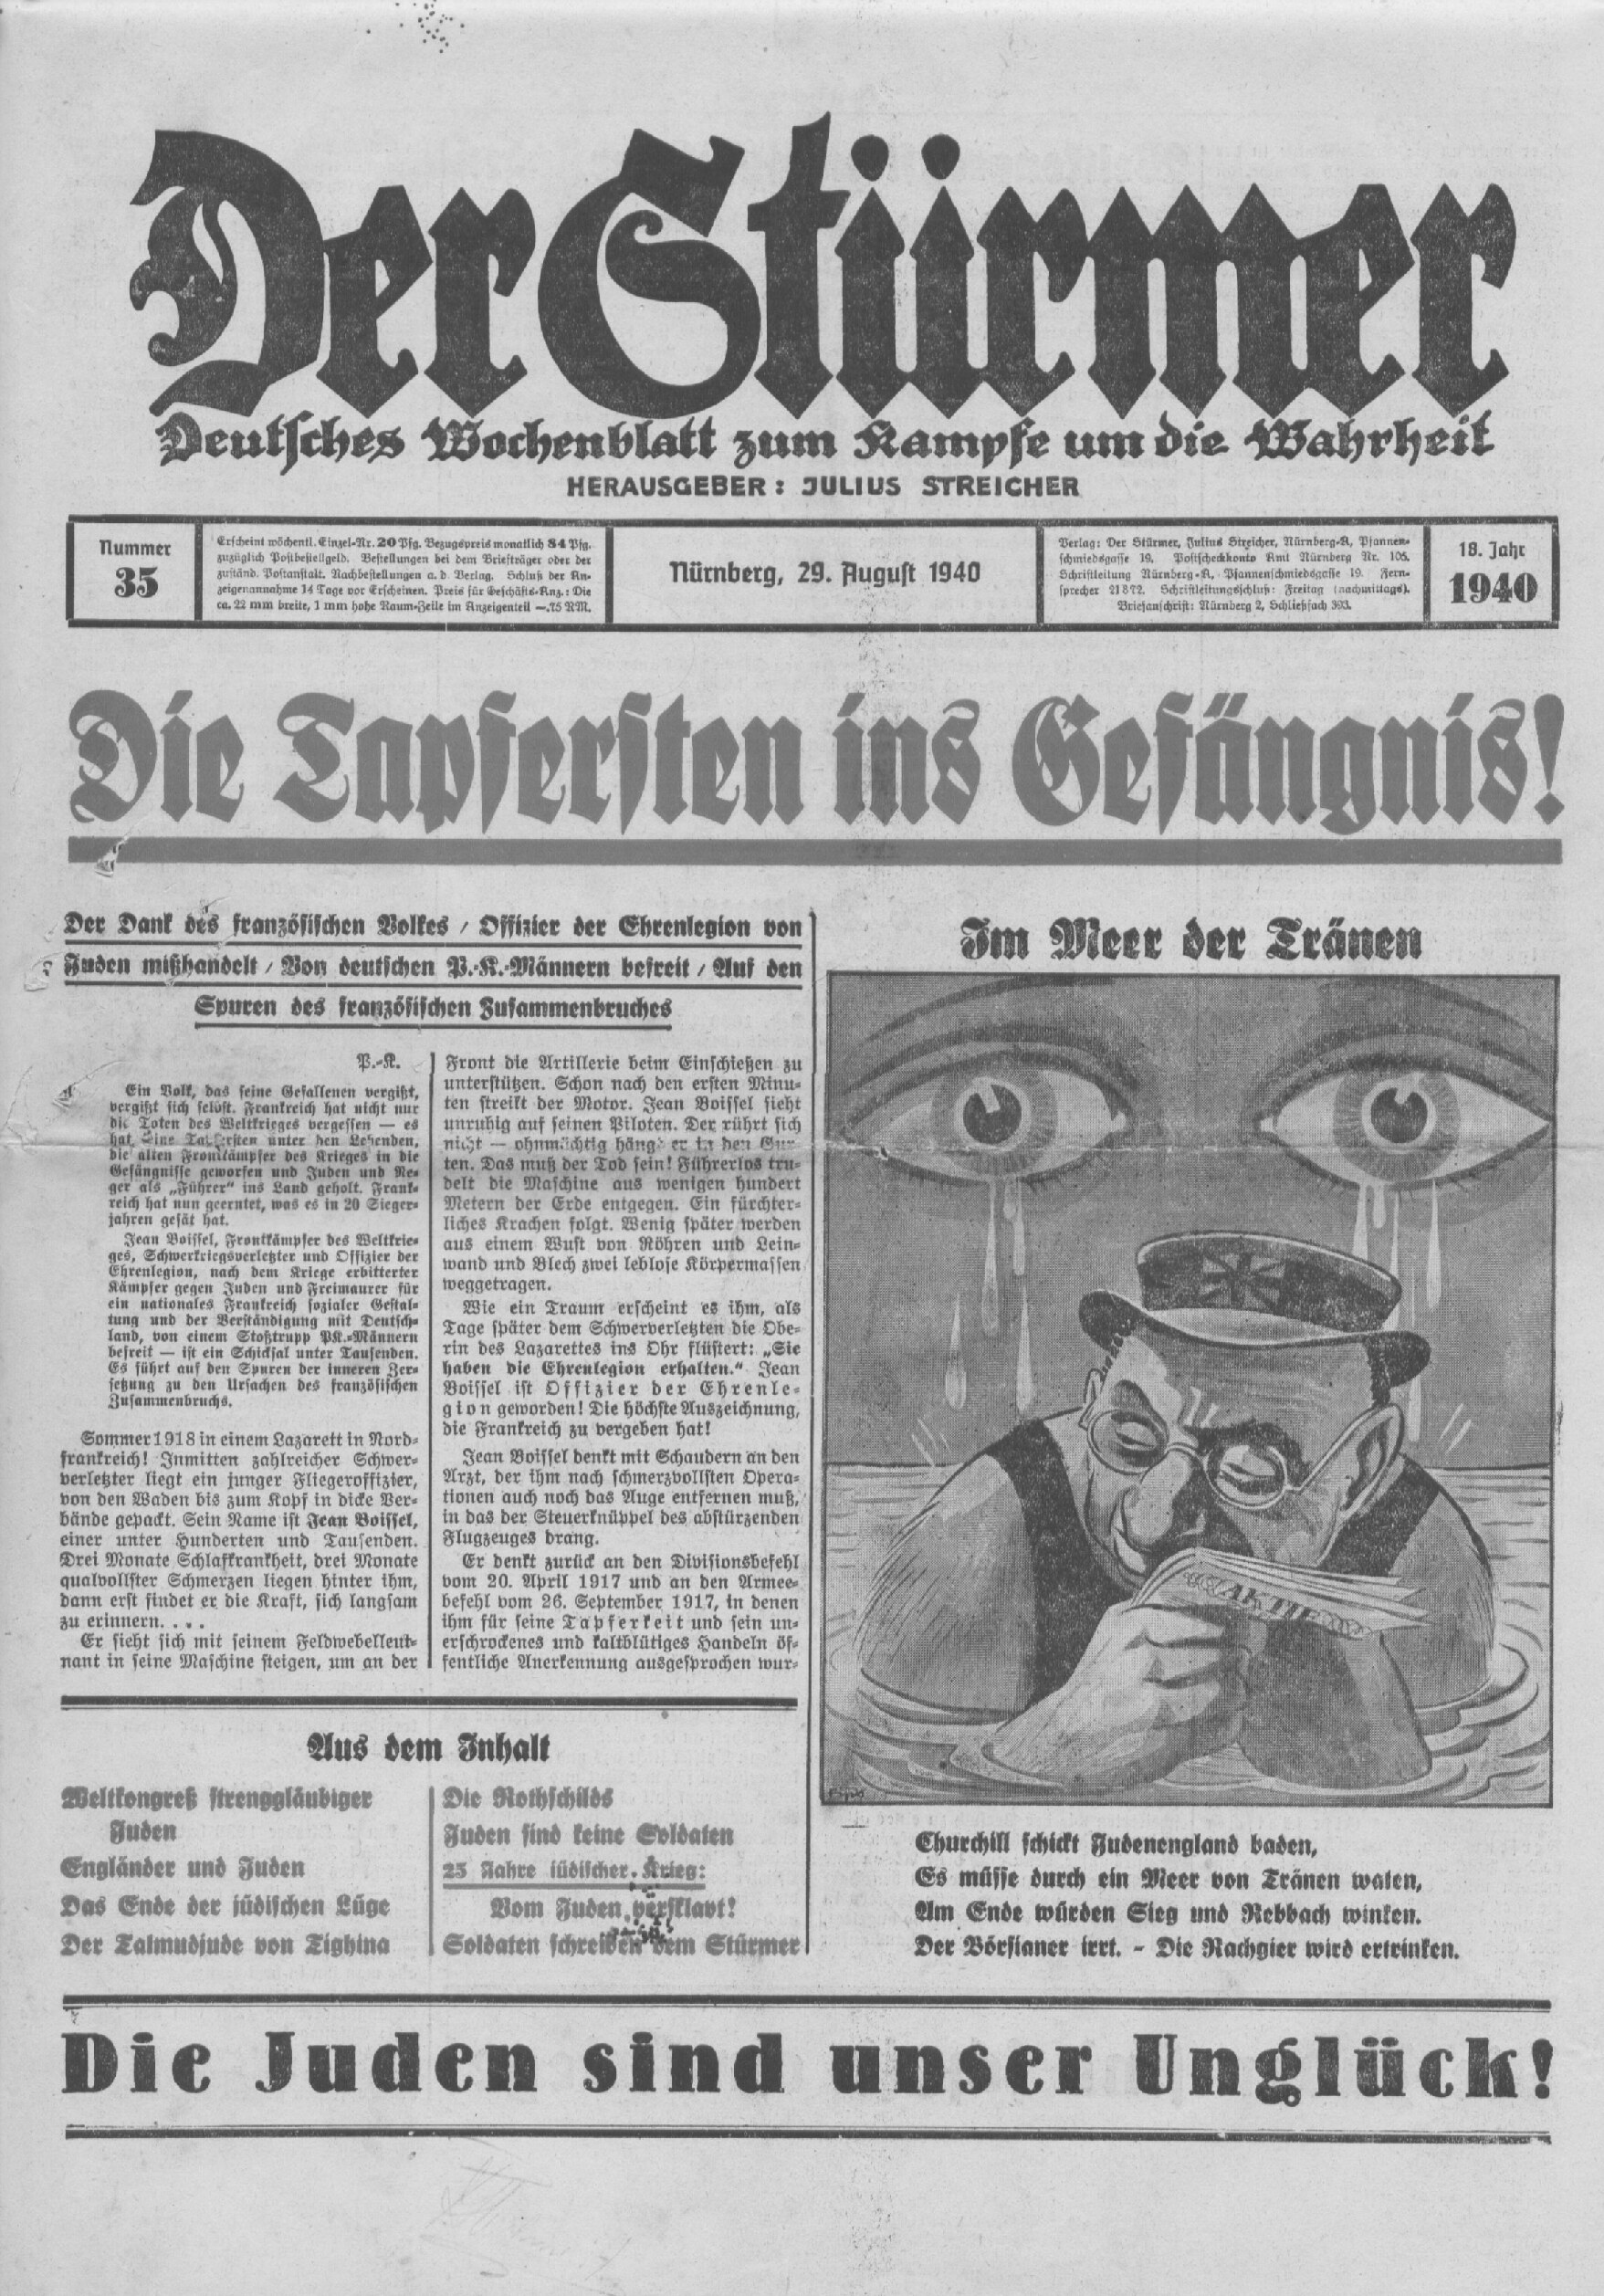 Der Stürmer - 1940 Nr. 35 - Die Tapfersten ins Gefängnis!